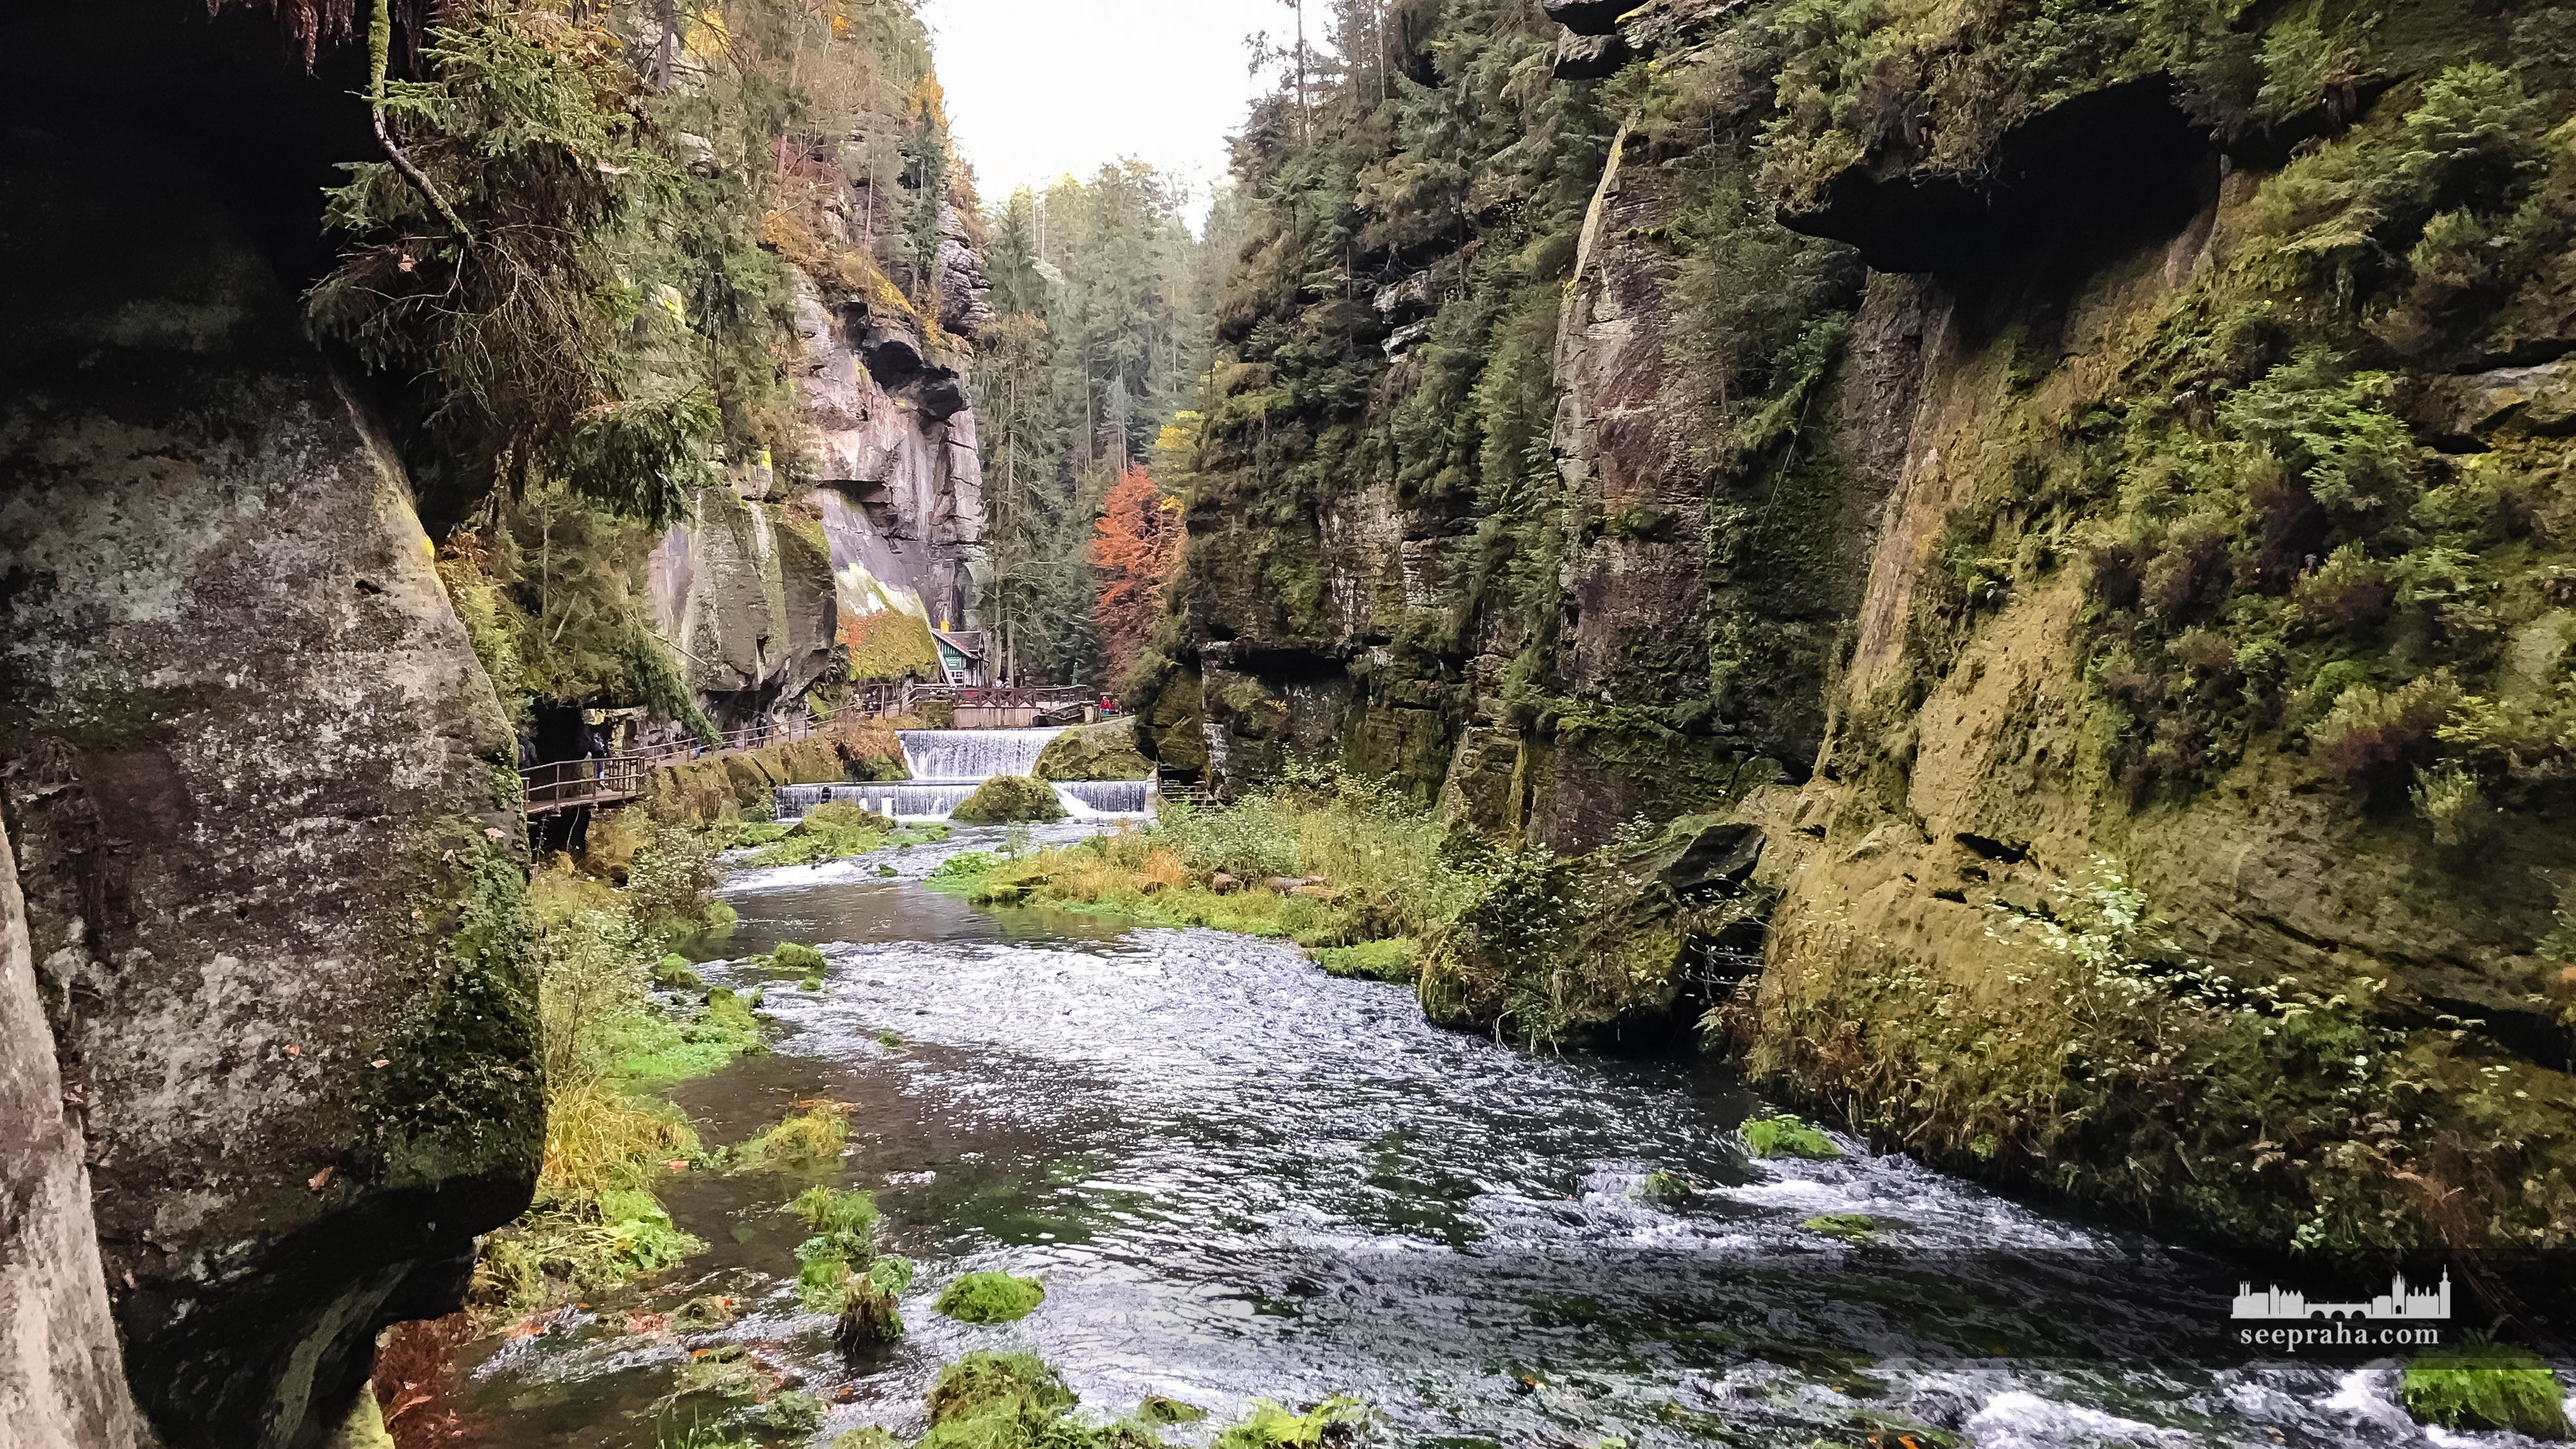 Edmundsklamm und der Fluss Kamenice, Böhmische Schweiz, Tschechien